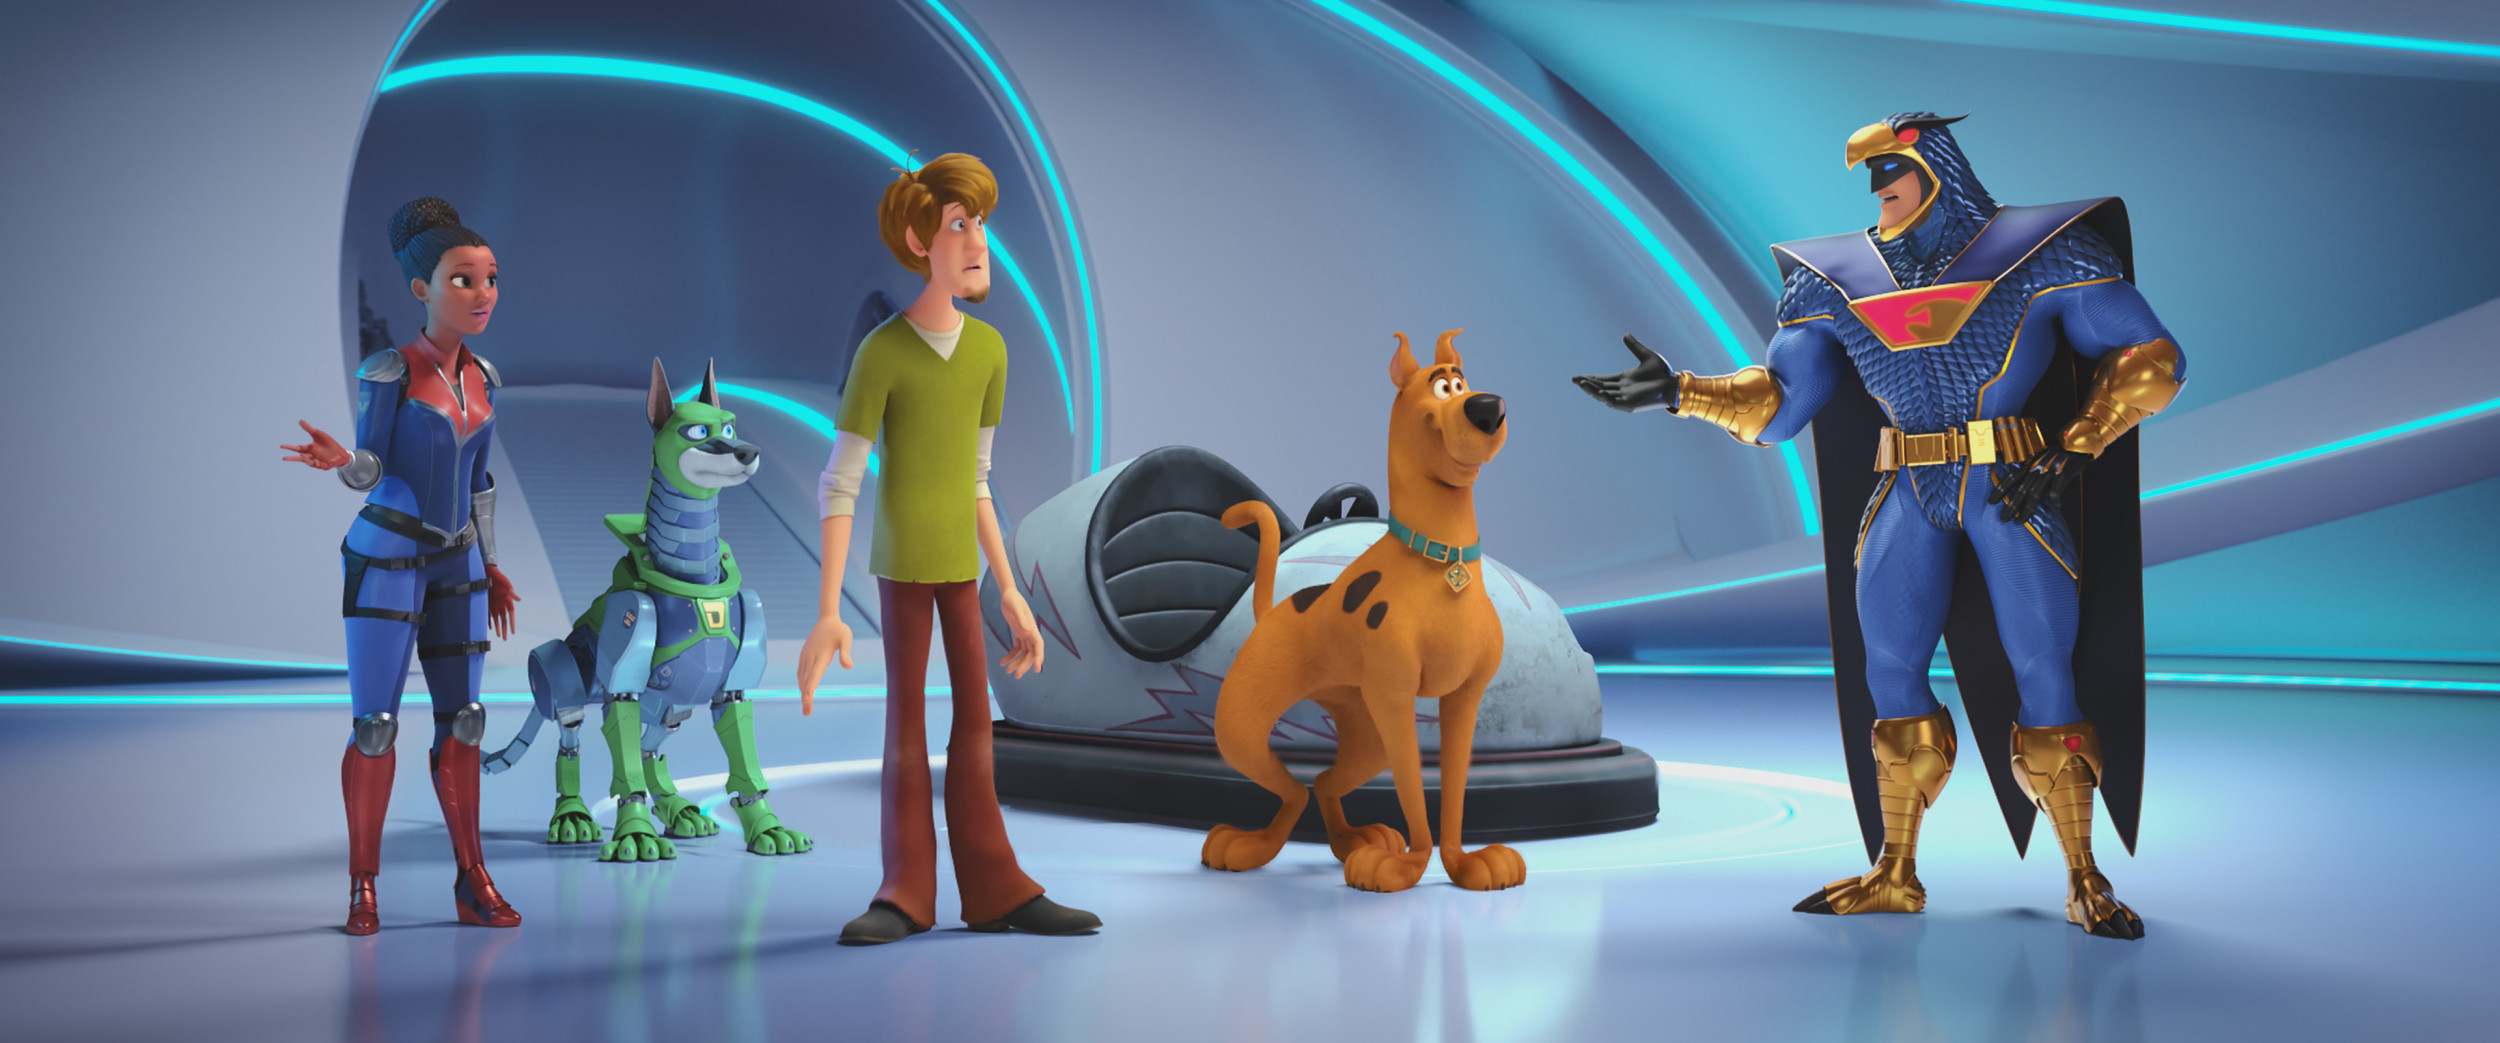 TV & Movie Character Toys Scoob Scooby-Doo & Captain Caveman Movie 2020